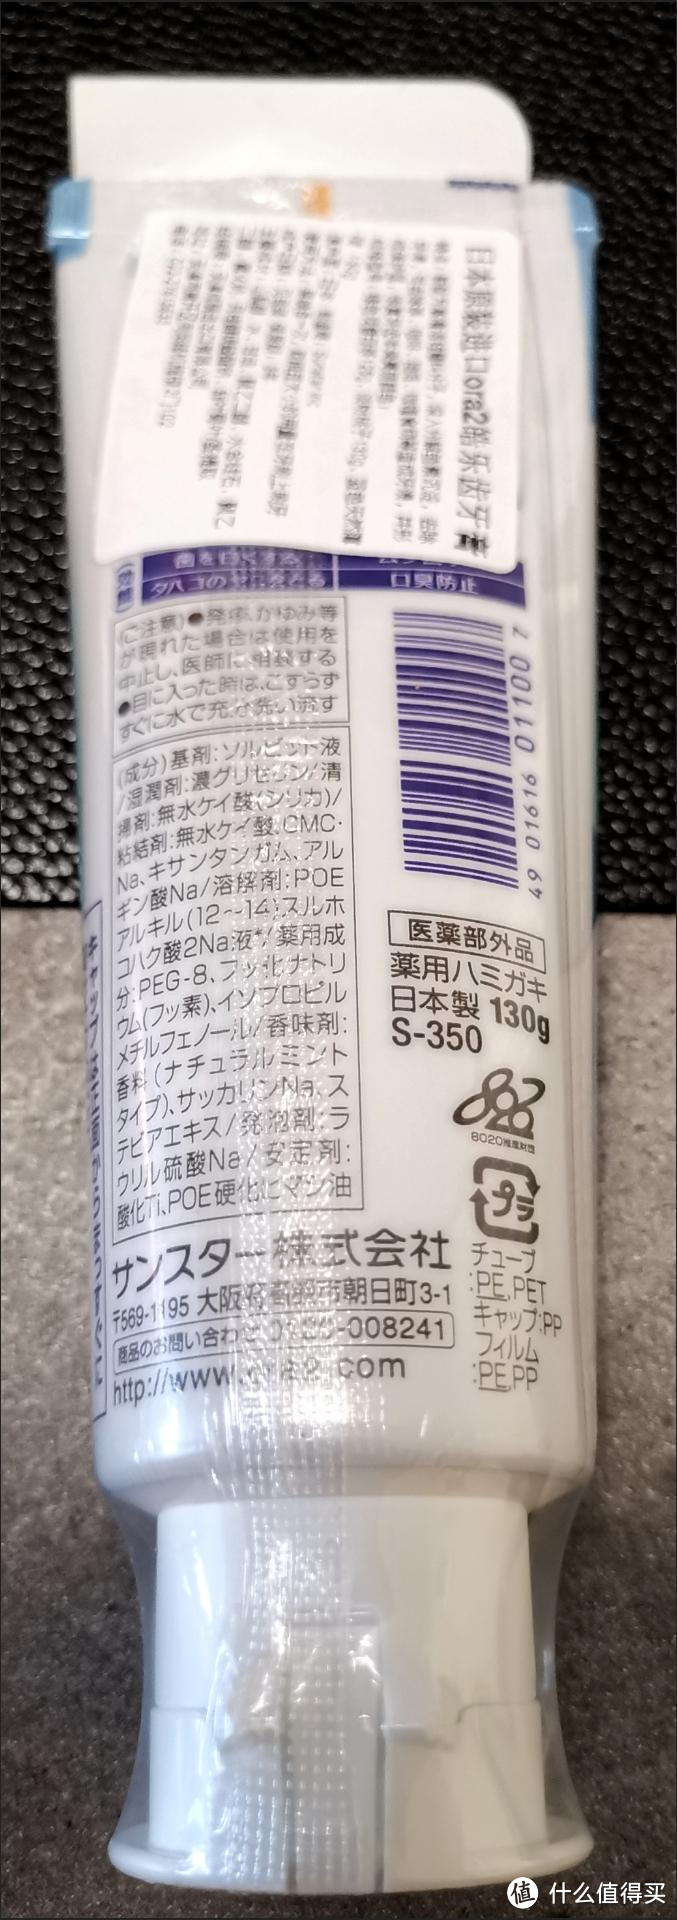 日本原装皓乐齿的牙膏